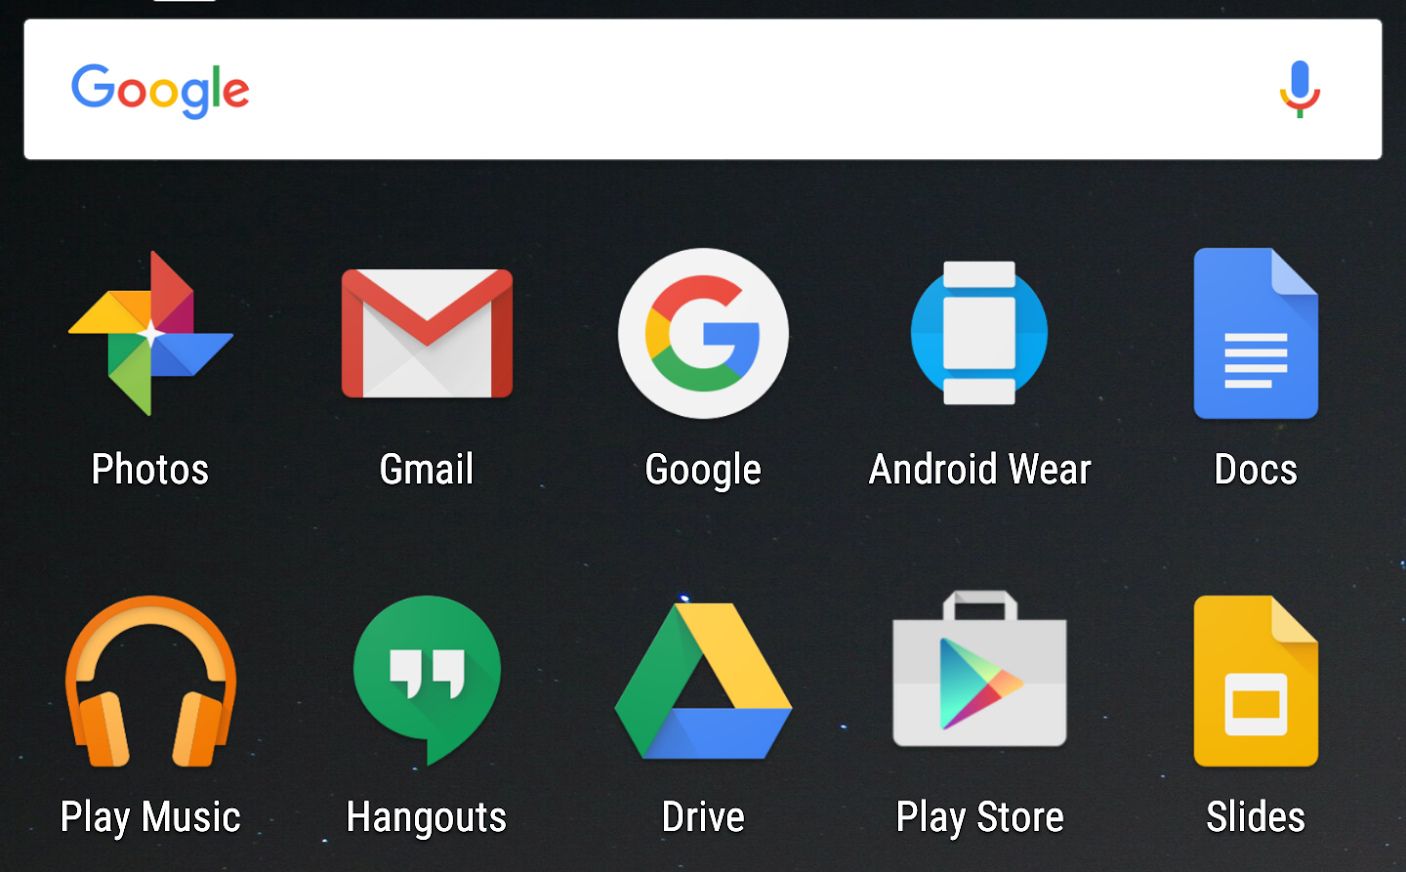 螢幕顯示搭載 Android 7.0 系統映像檔的裝置未放大顯示大小